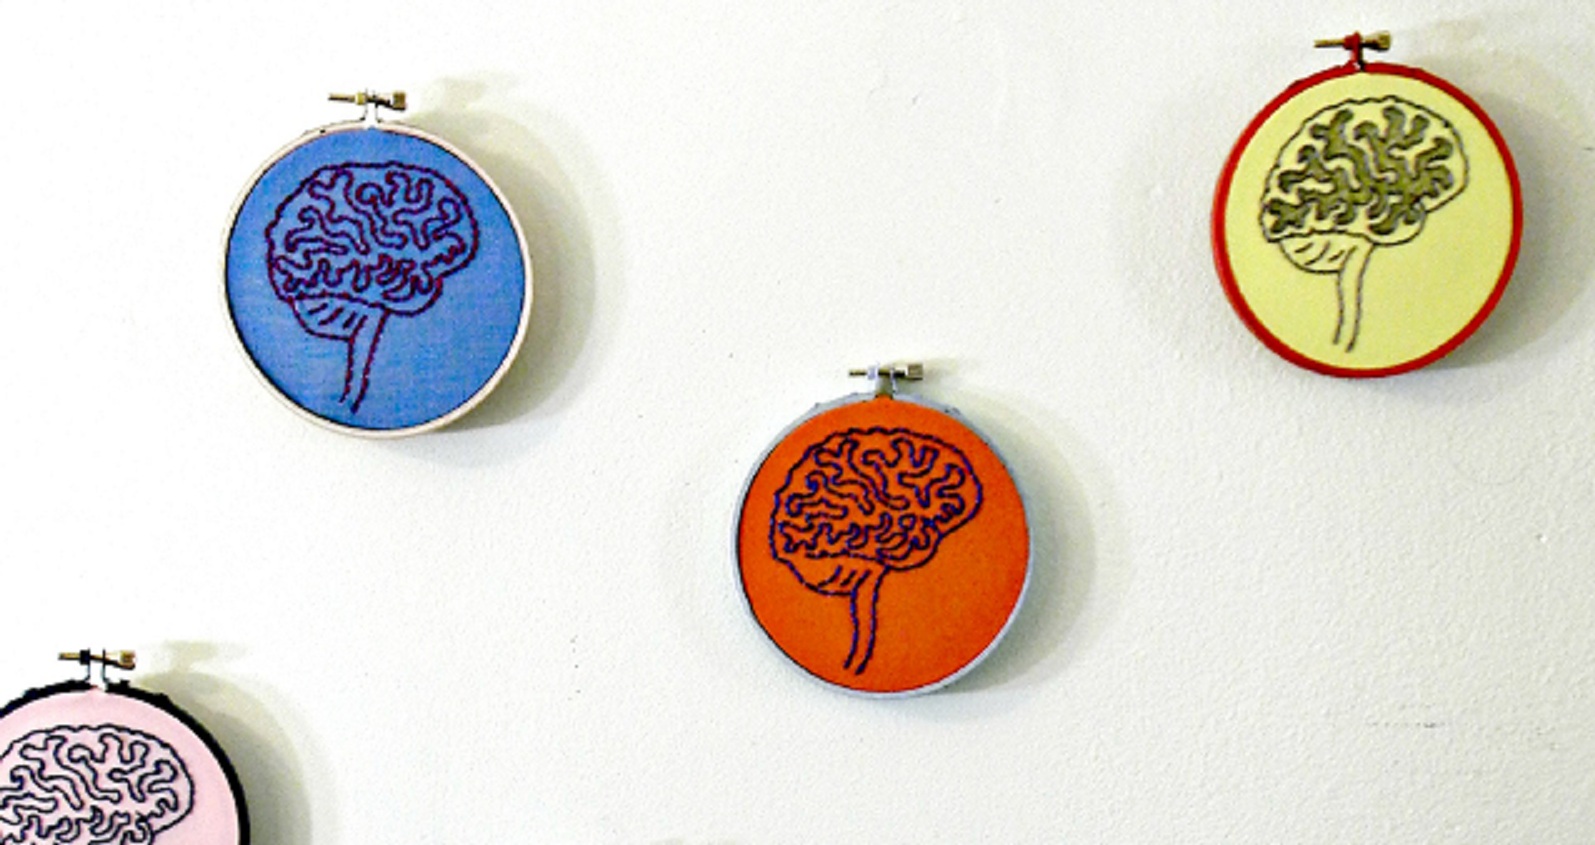 Cuatro cerebros bordados. Imagen: Hey Paul Studios. Fuente: Flickr.